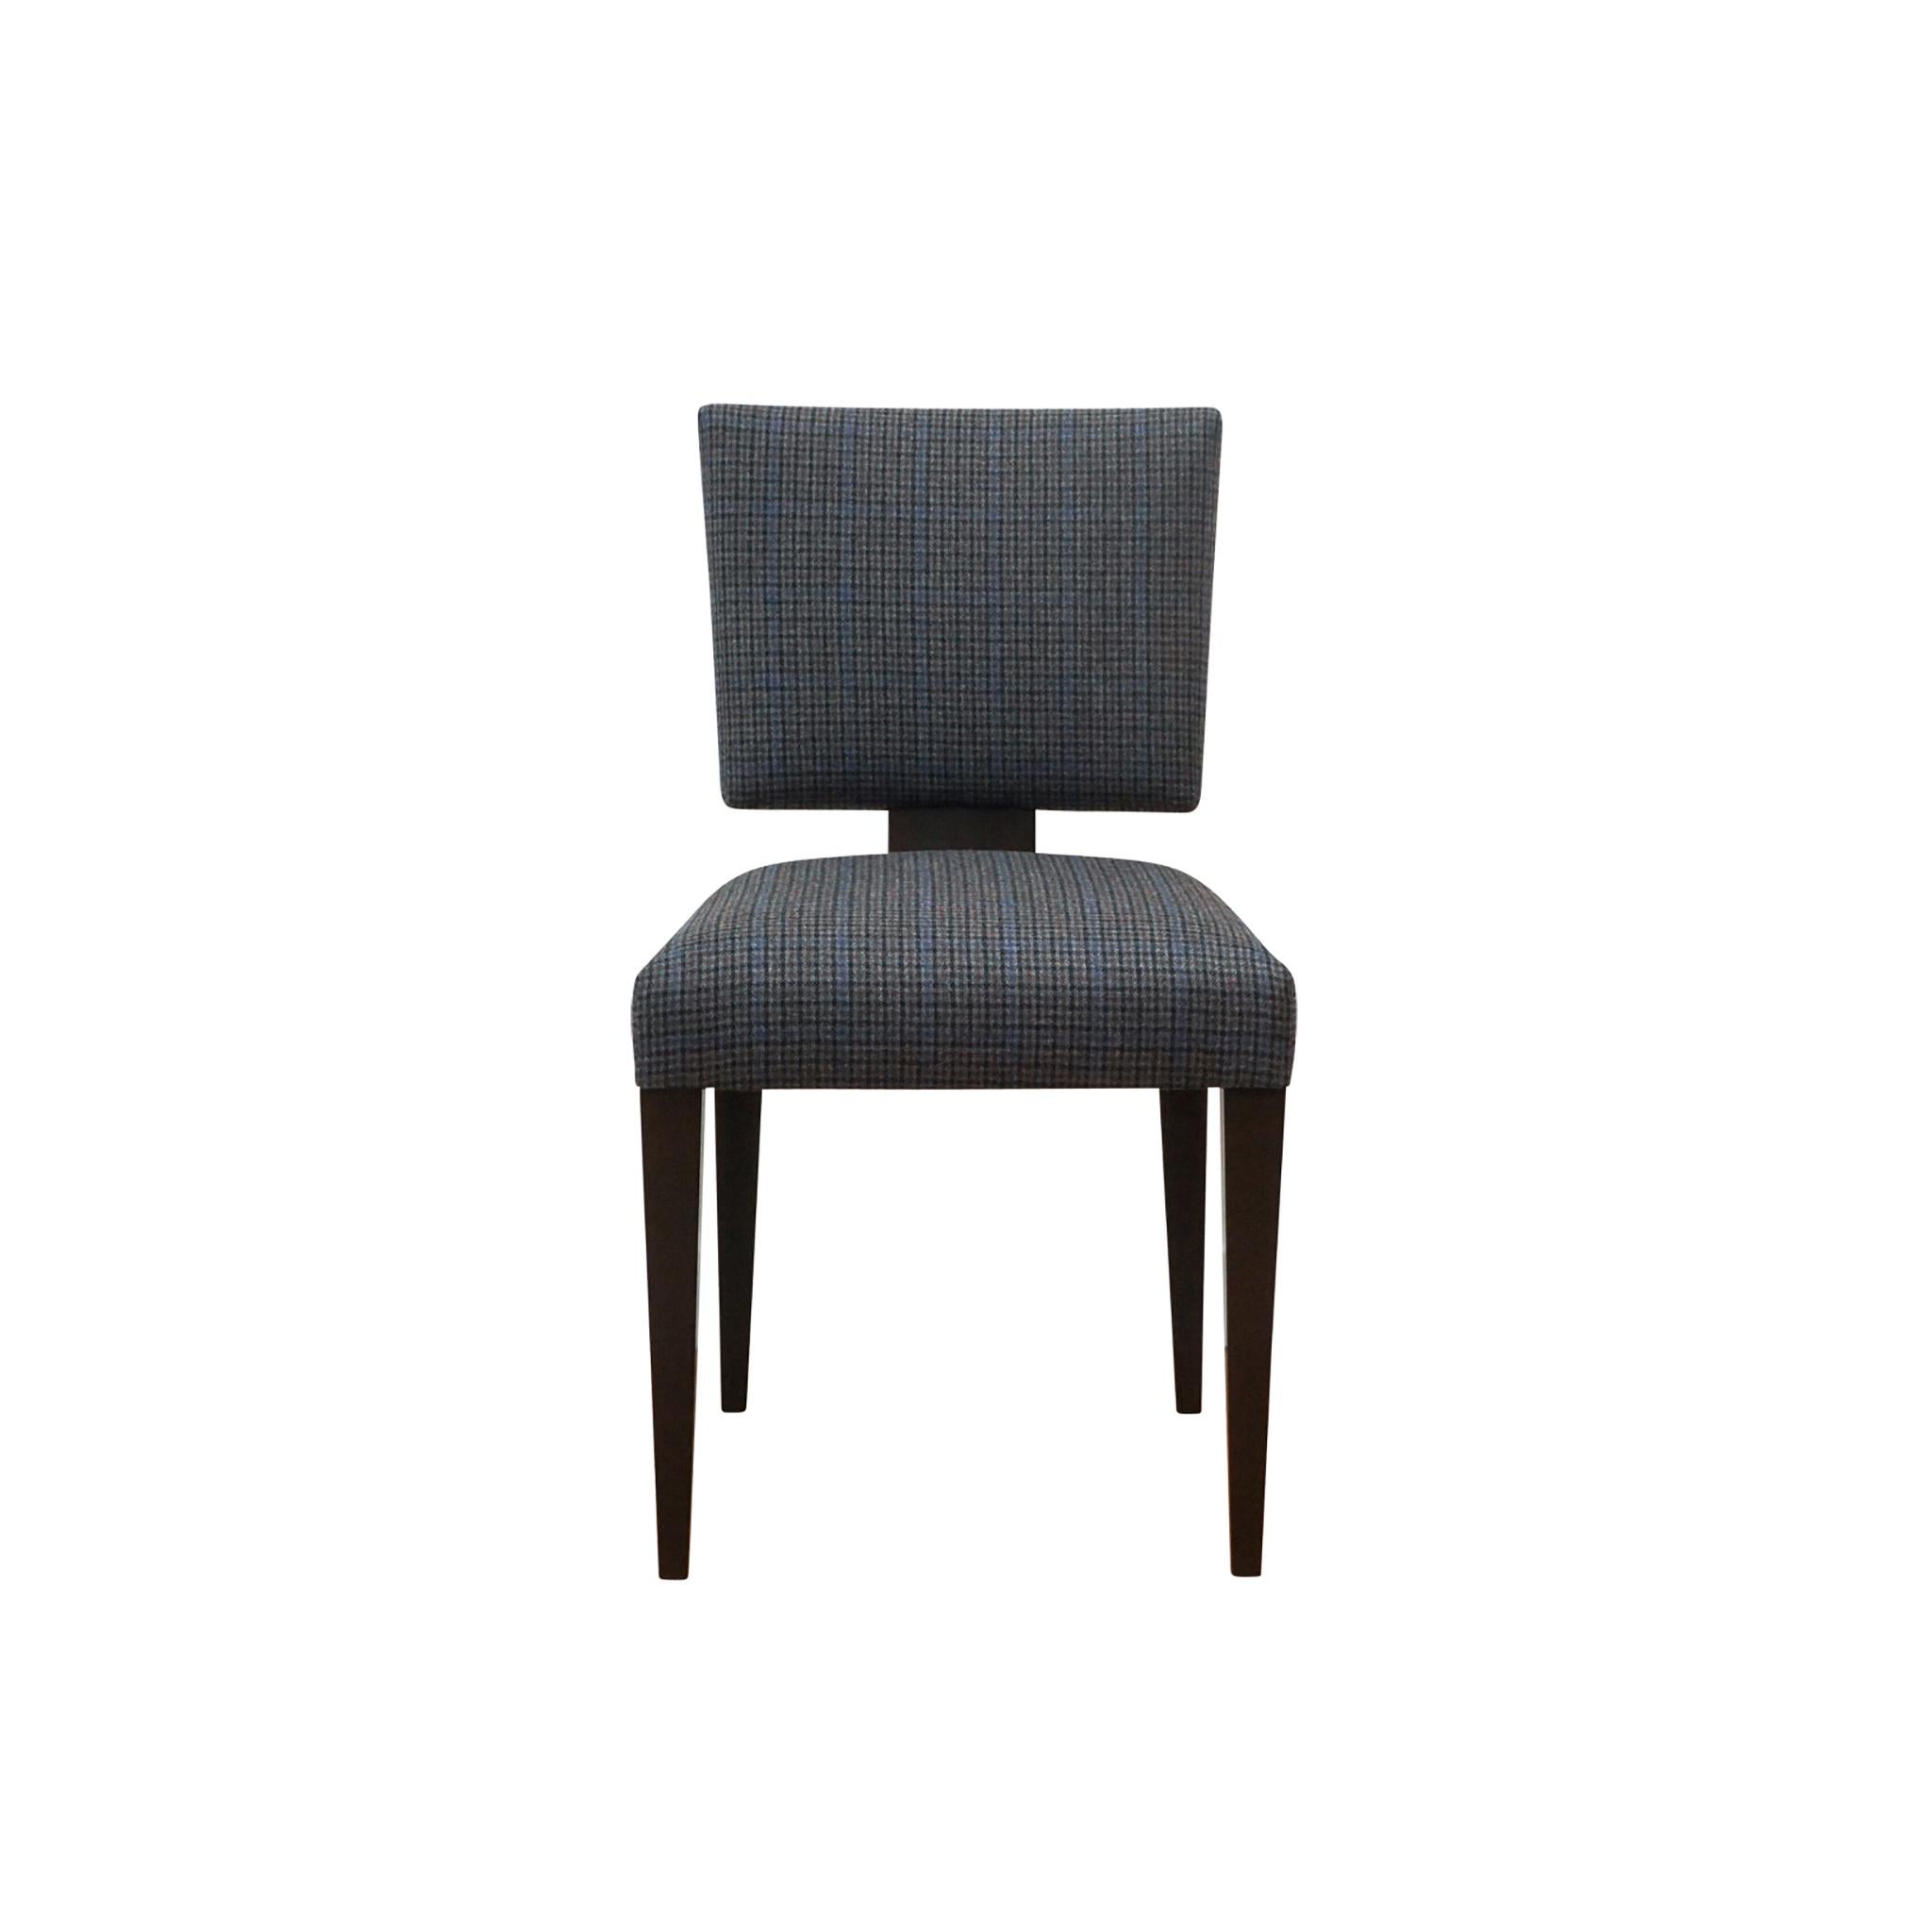 Inspirée d'un modèle Dunbar classique des années 1950, la chaise Claudette Dining/Side Chair fait partie de la collection Custom de foley&cox HOME. La structure en noyer, avec ses pieds effilés et son épaulement arrière, est disponible en trois